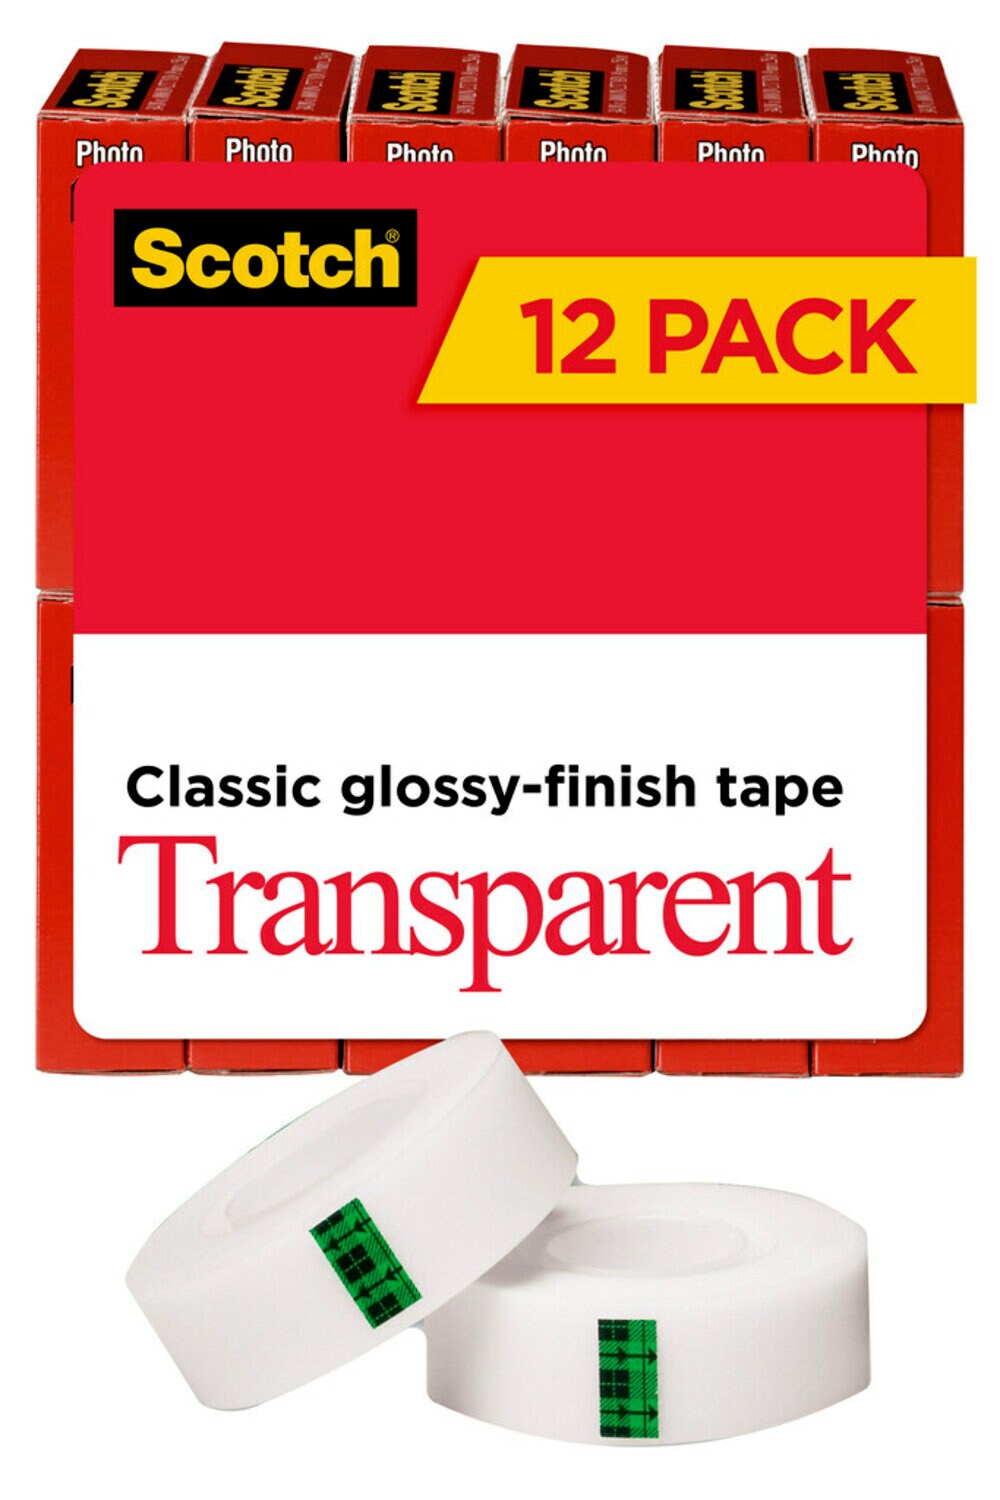 7100104287 - Scotch Transparent Tape 600K12, 3/4 in x 1000 in 12 pack